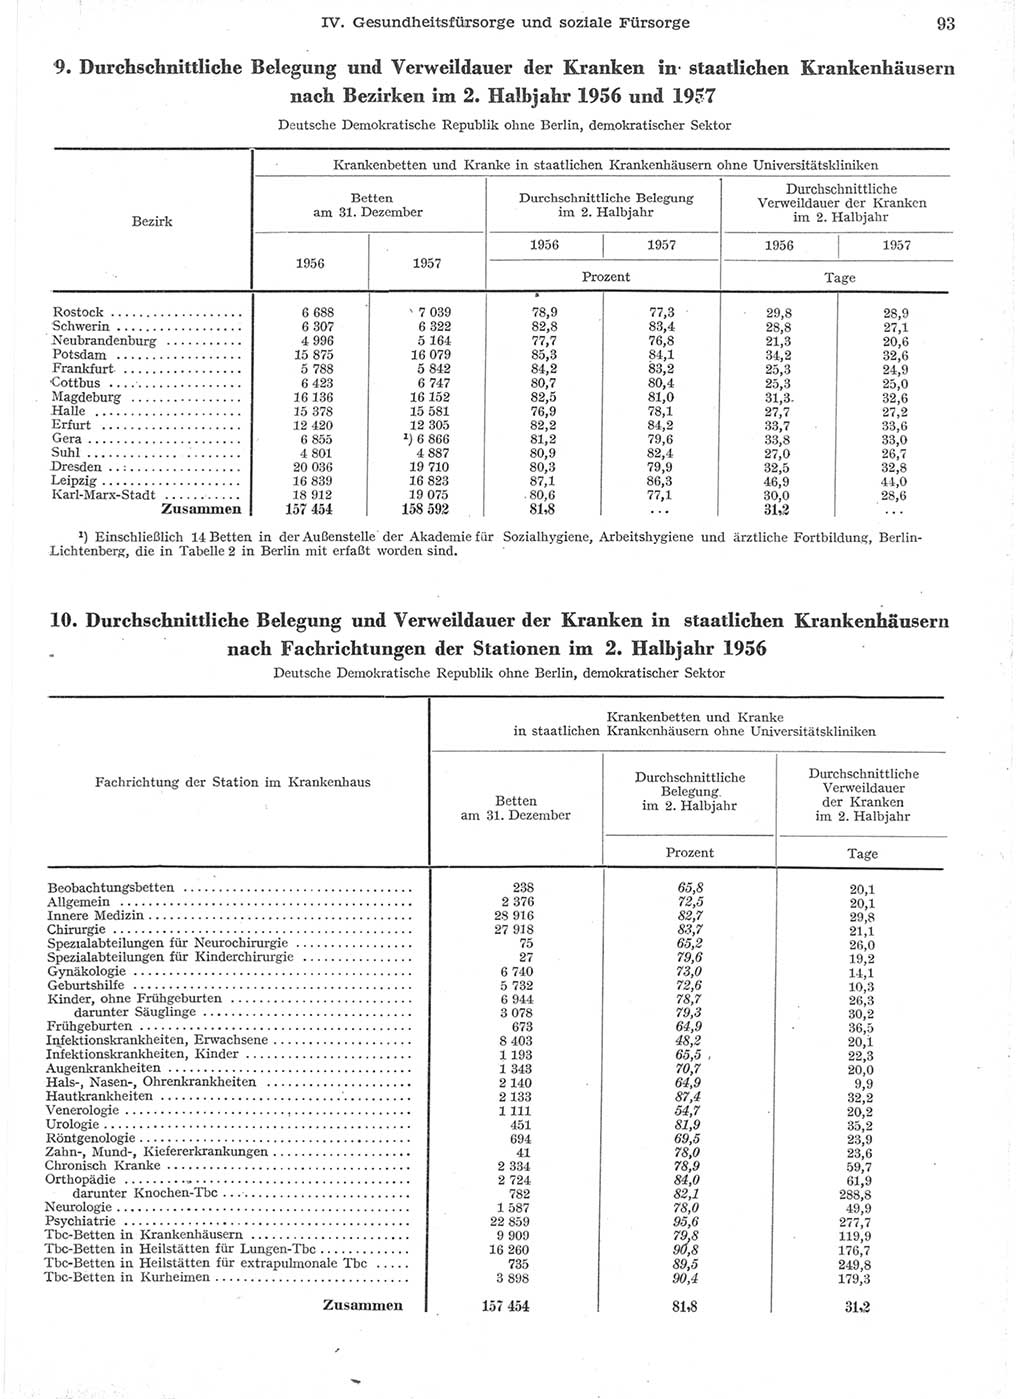 Statistisches Jahrbuch der Deutschen Demokratischen Republik (DDR) 1957, Seite 93 (Stat. Jb. DDR 1957, S. 93)